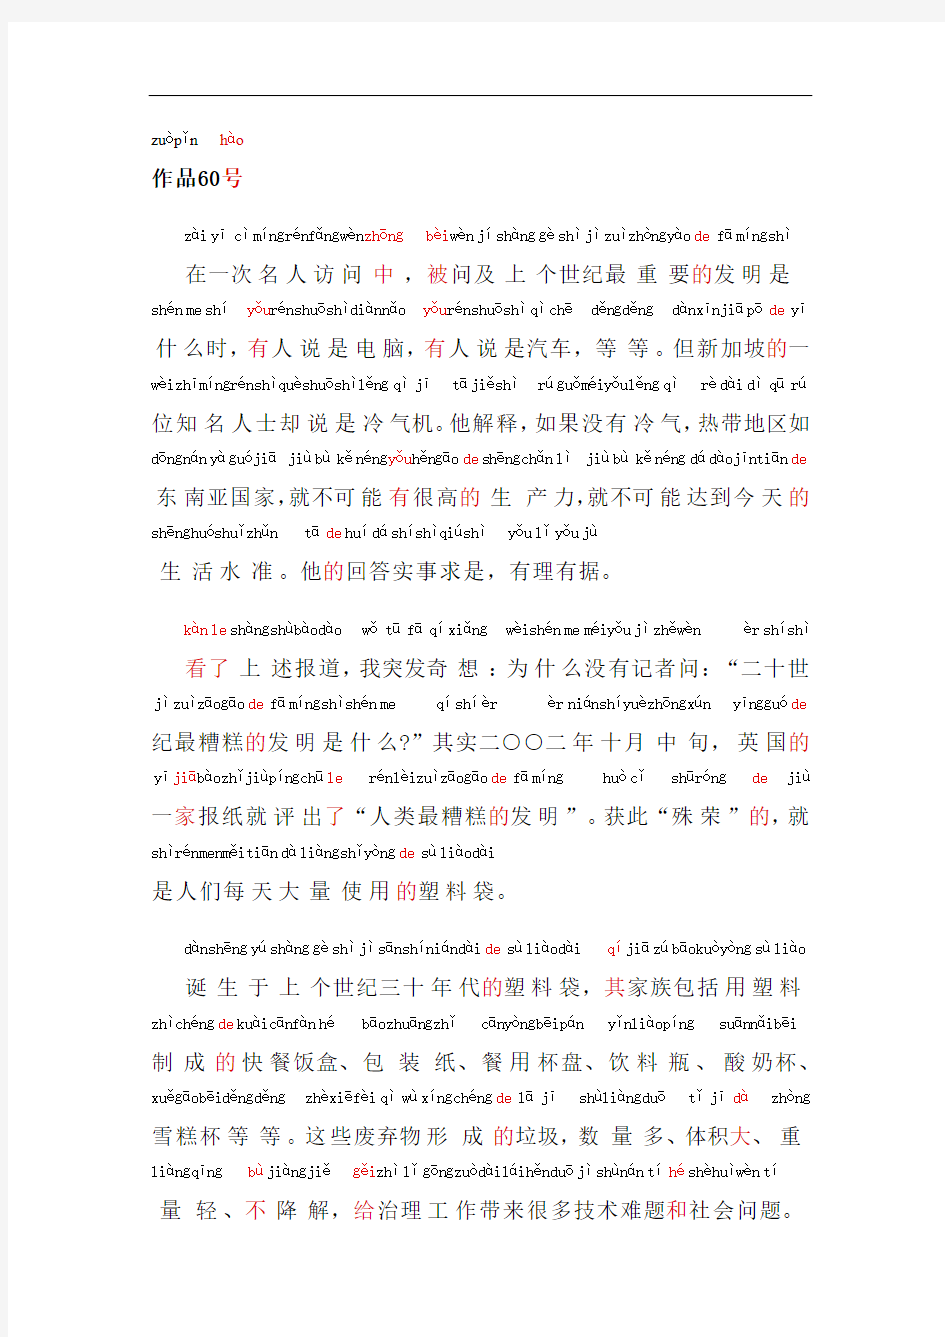 普通话考试资料60普通话朗读作品《最糟糕的发明》文字加拼音